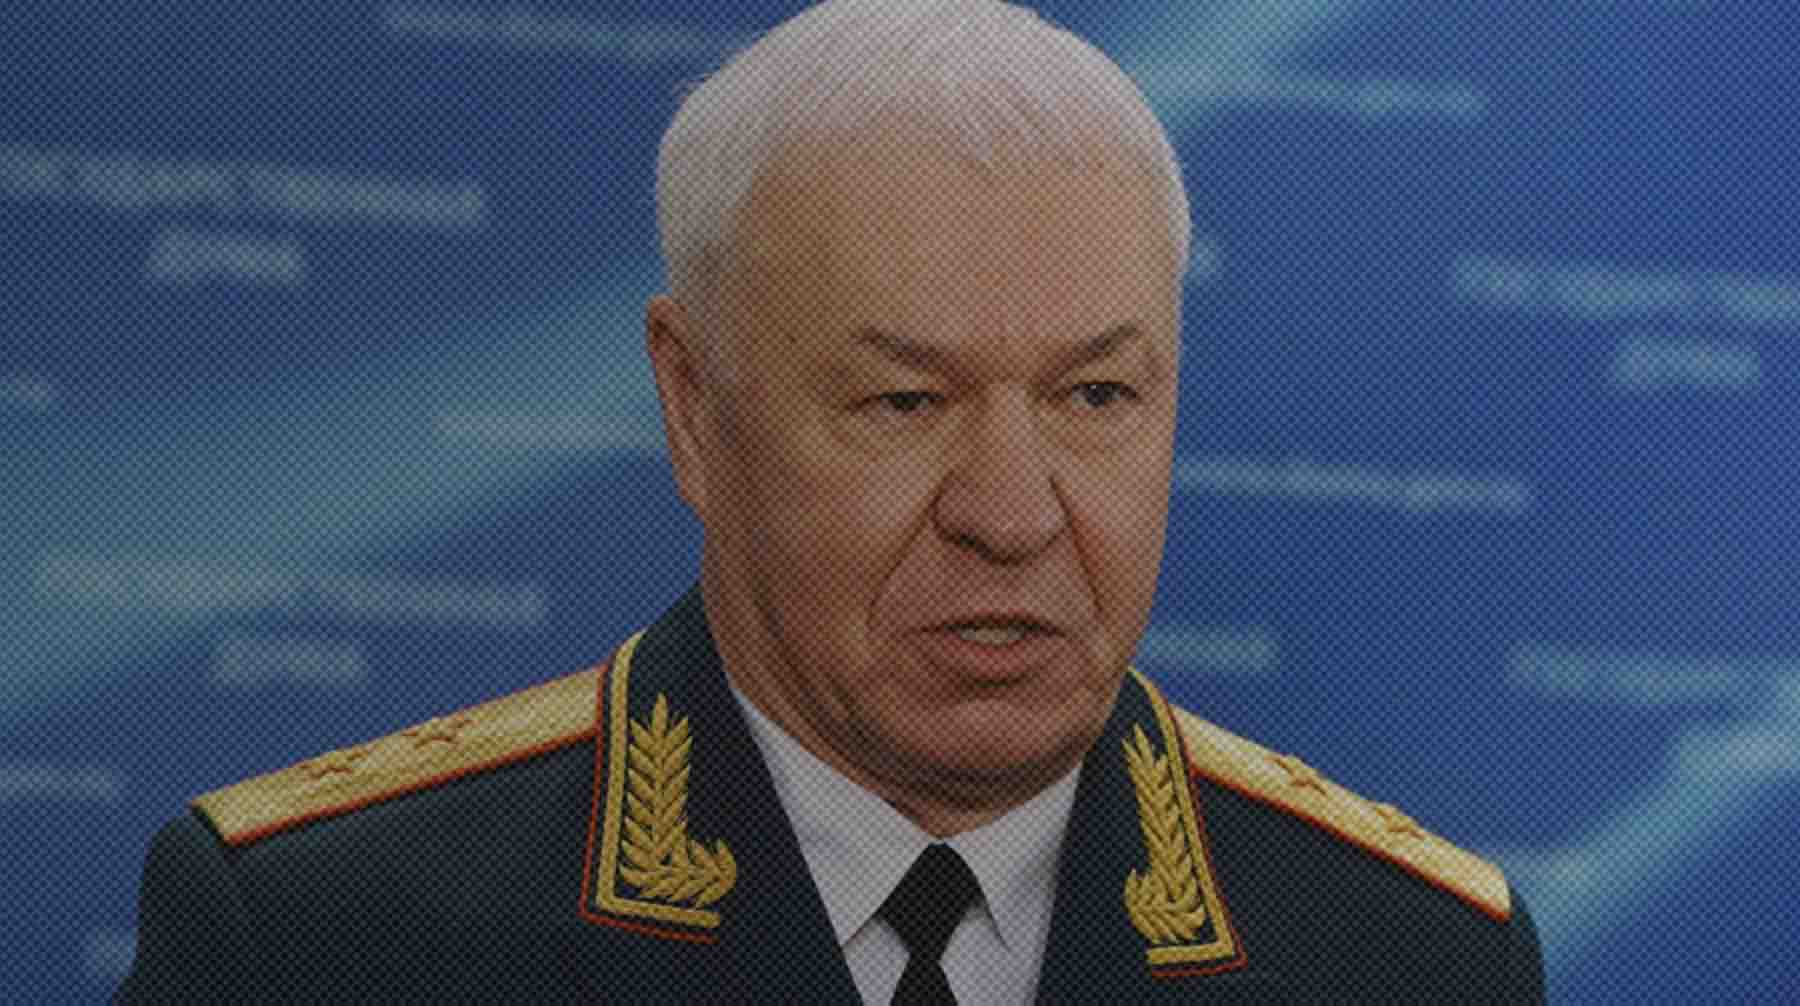 Dailystorm - Депутат Соболев заявил, что знал Стрелкова только с хорошей стороны, как «защитника Донбасса»